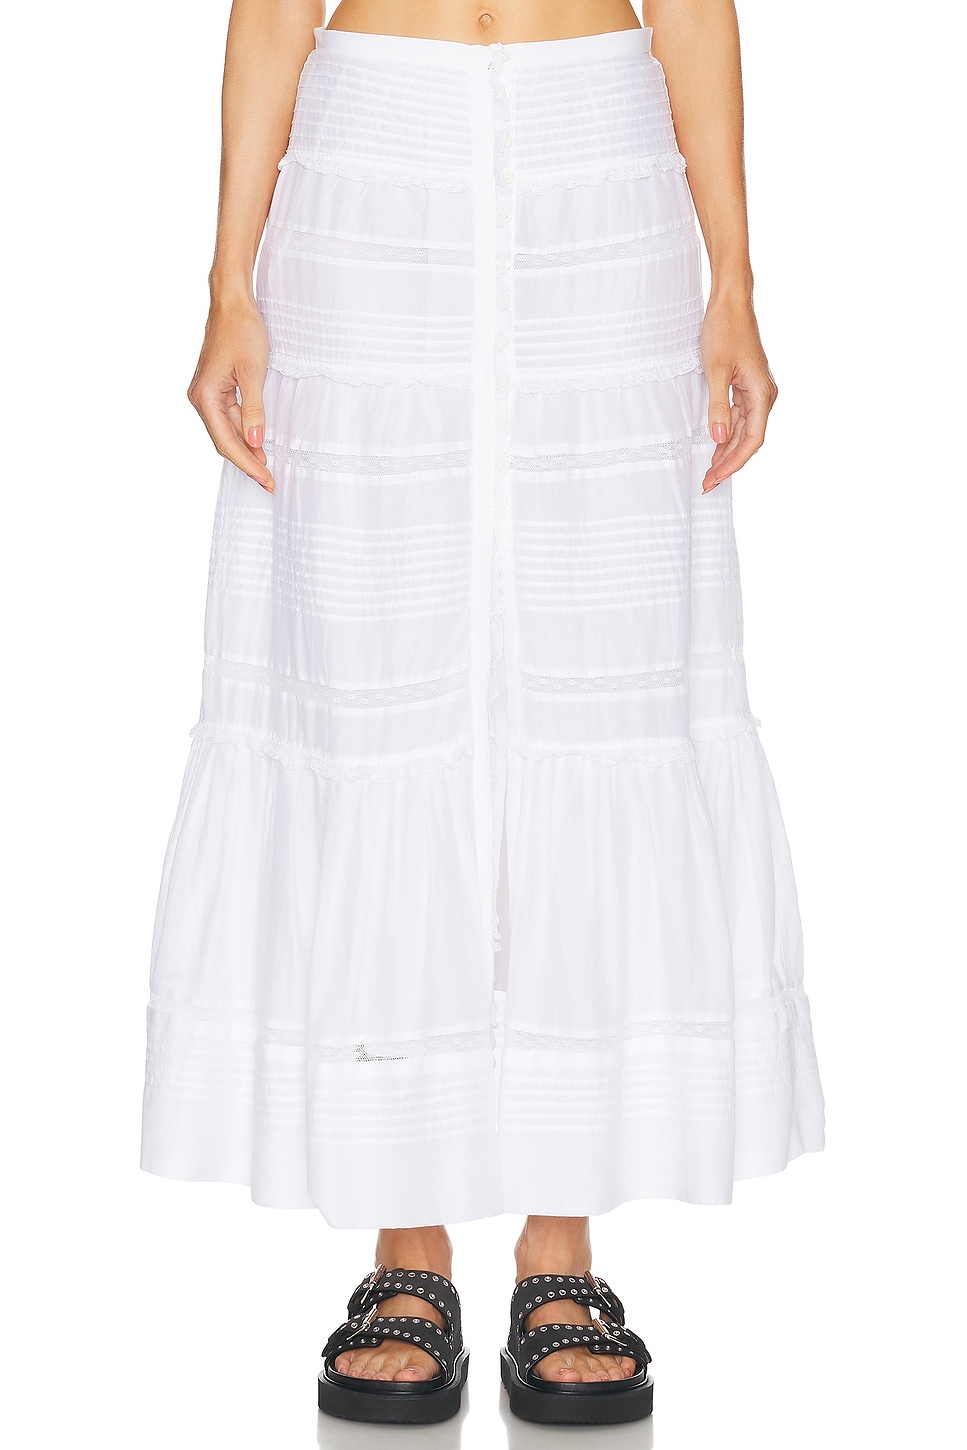 Gihane Skirt in White